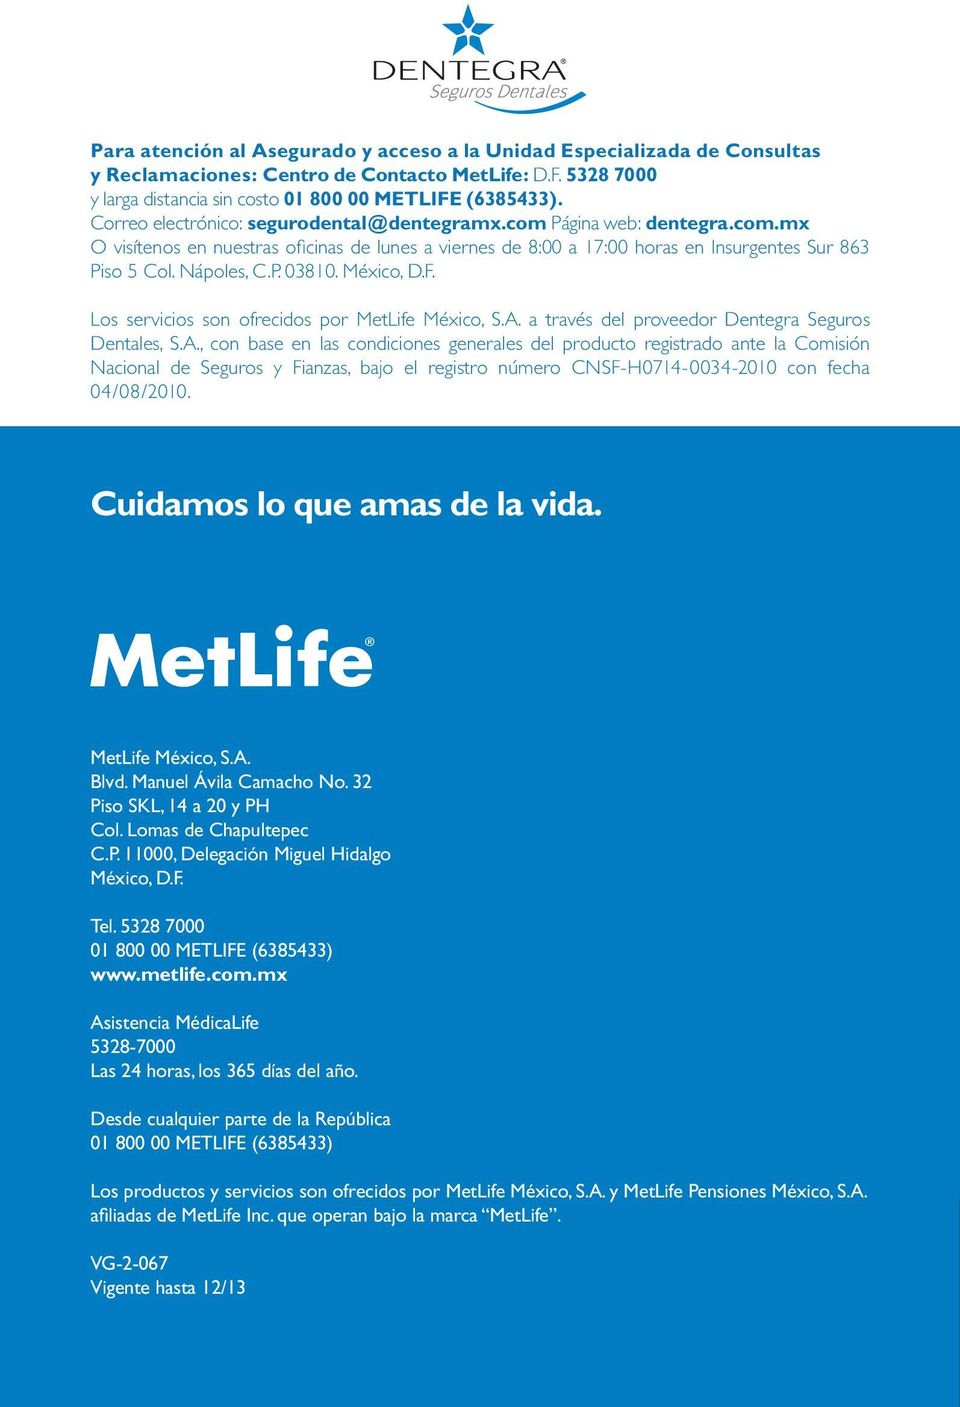 México, D.F. Los servicios son ofrecidos por MetLife México, S.A.